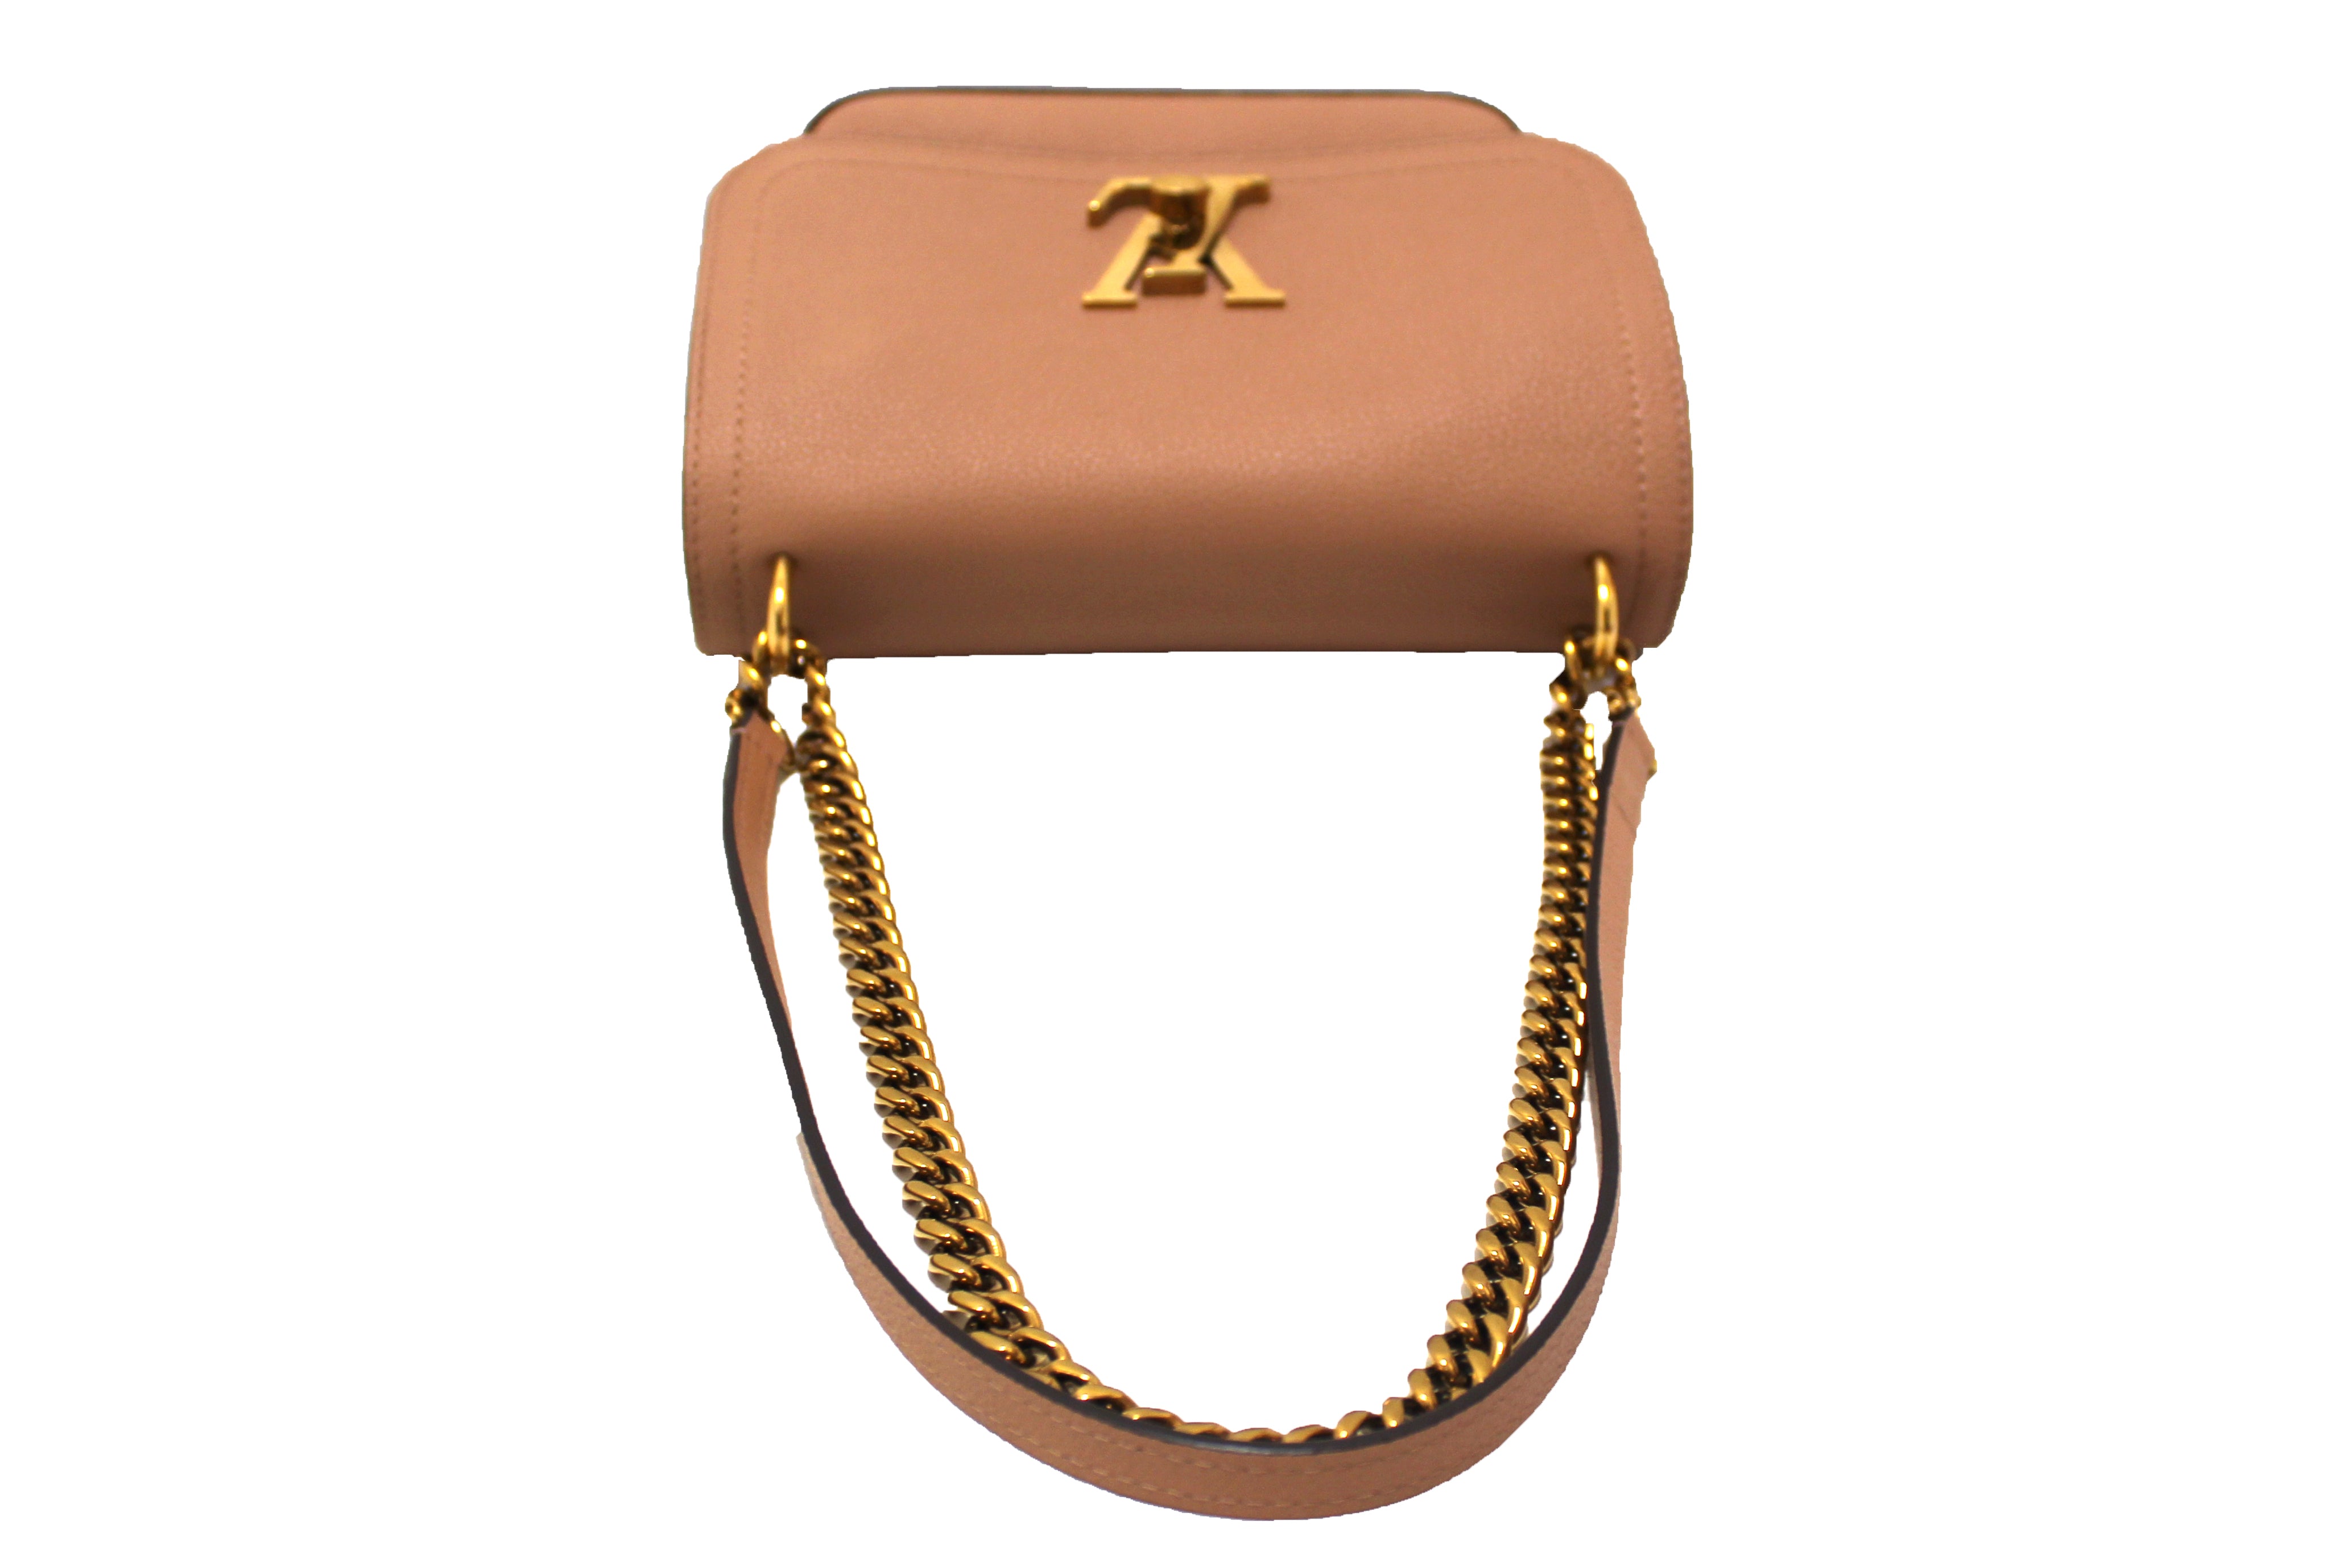 Louis Vuitton LV Shoulder Bag Lockme Pinks Leather 414736